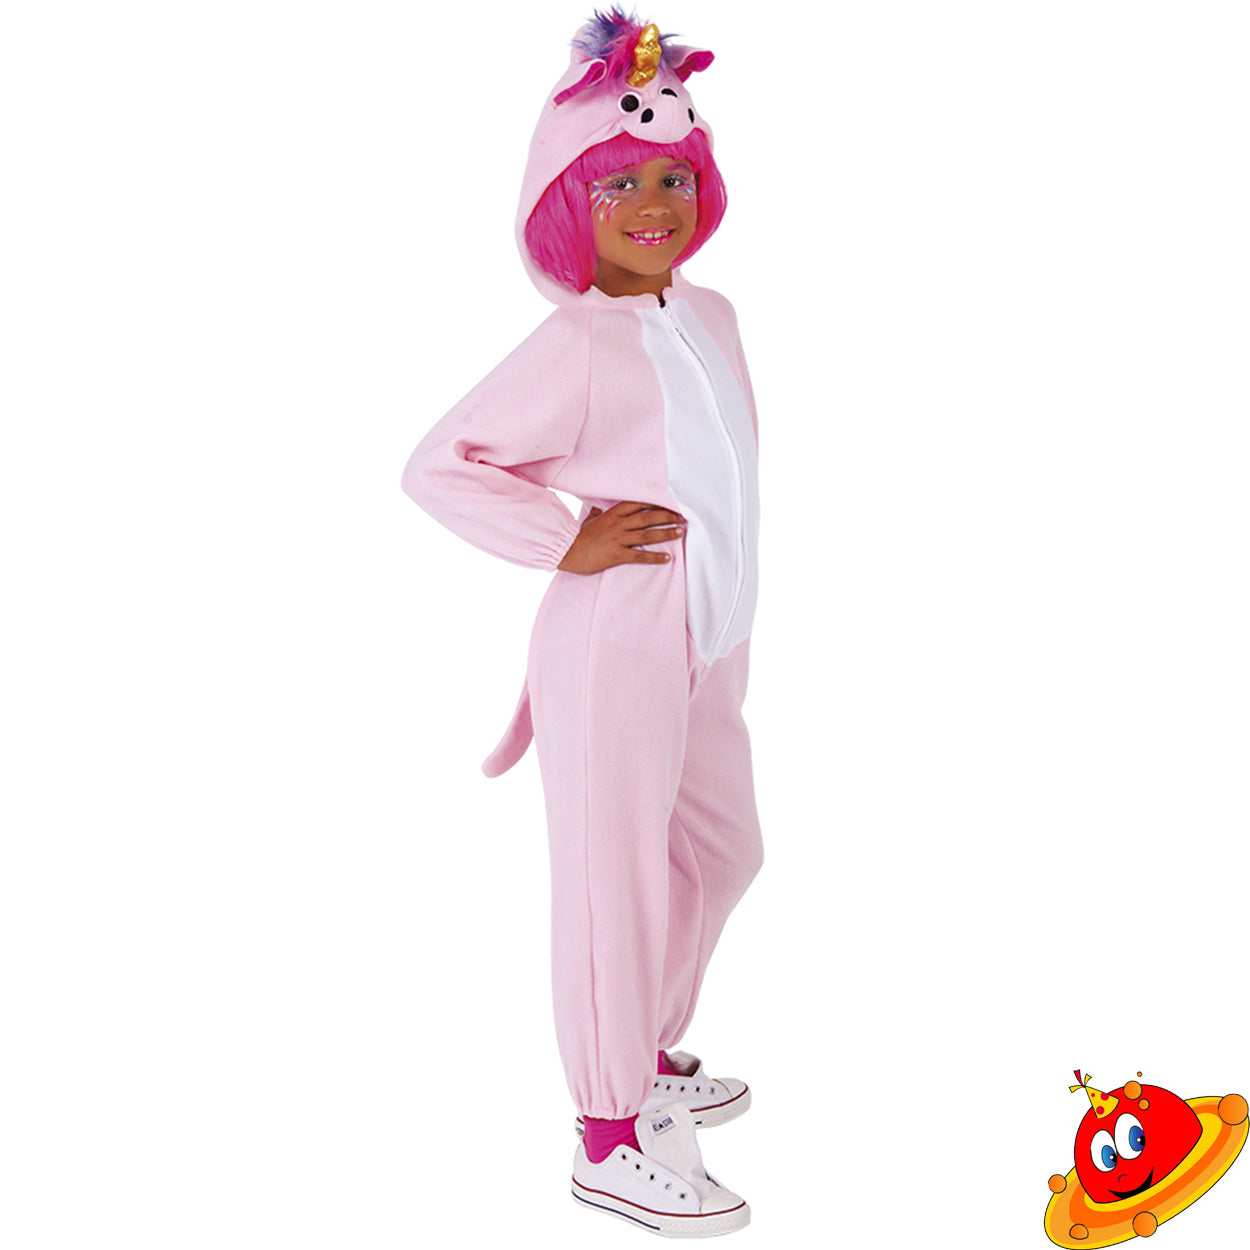 Costume Bambina Unicorno Rosa Tuta Kigurumi Tg 3/5A – Universo In Festa